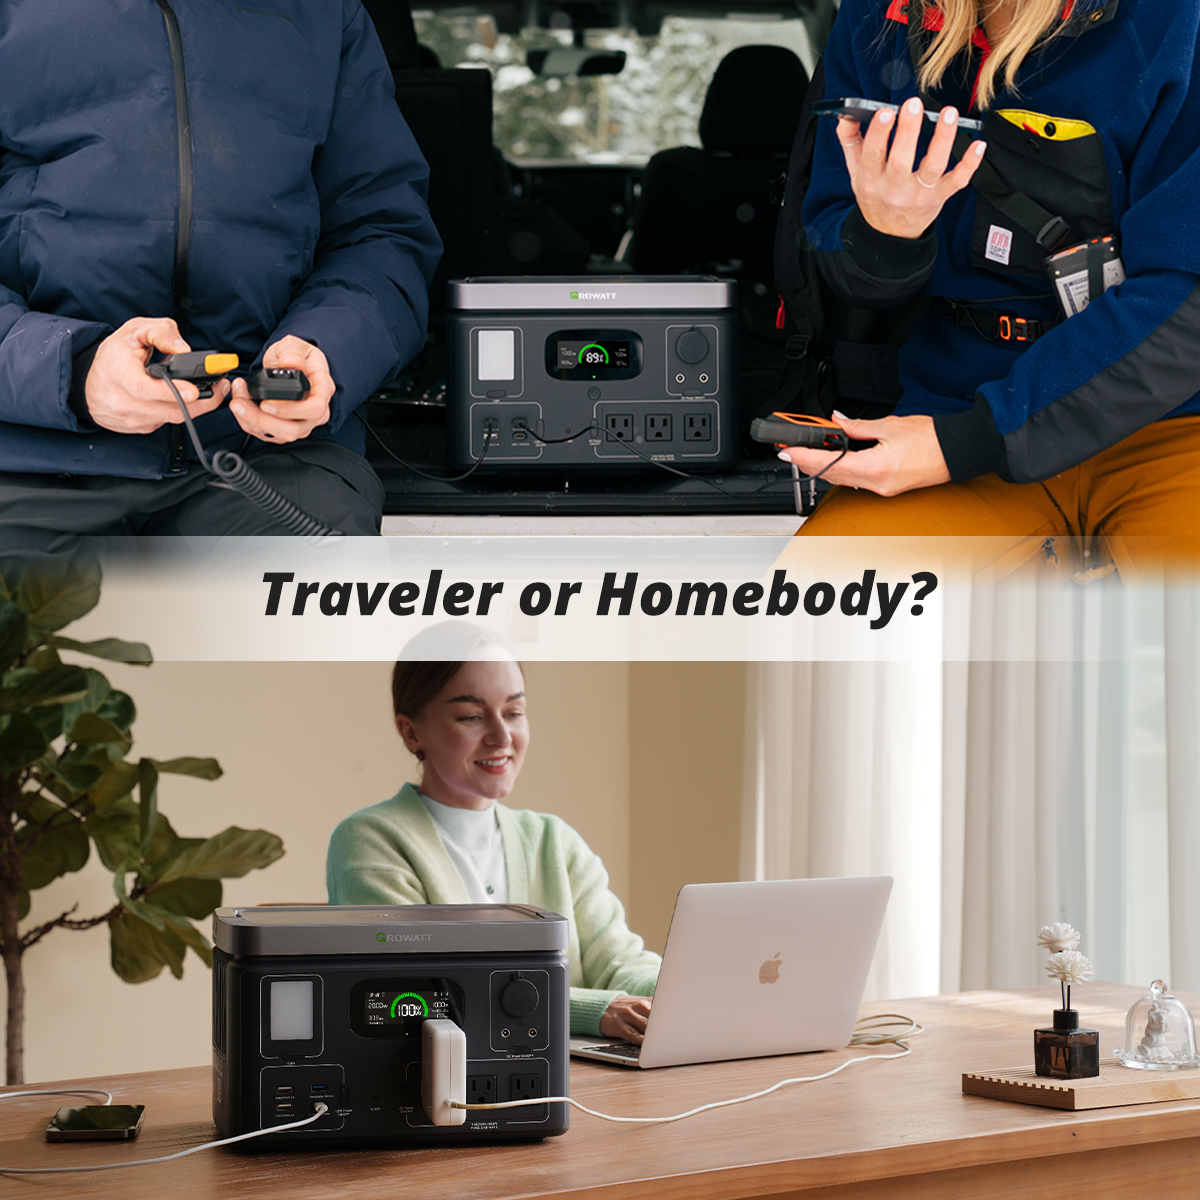 Let the battle begin!👀Traveler or Homebody? Which side are you on?🤔

#growatt #traveler #travelerlife #travelers #homebody #homebodylife #homebody